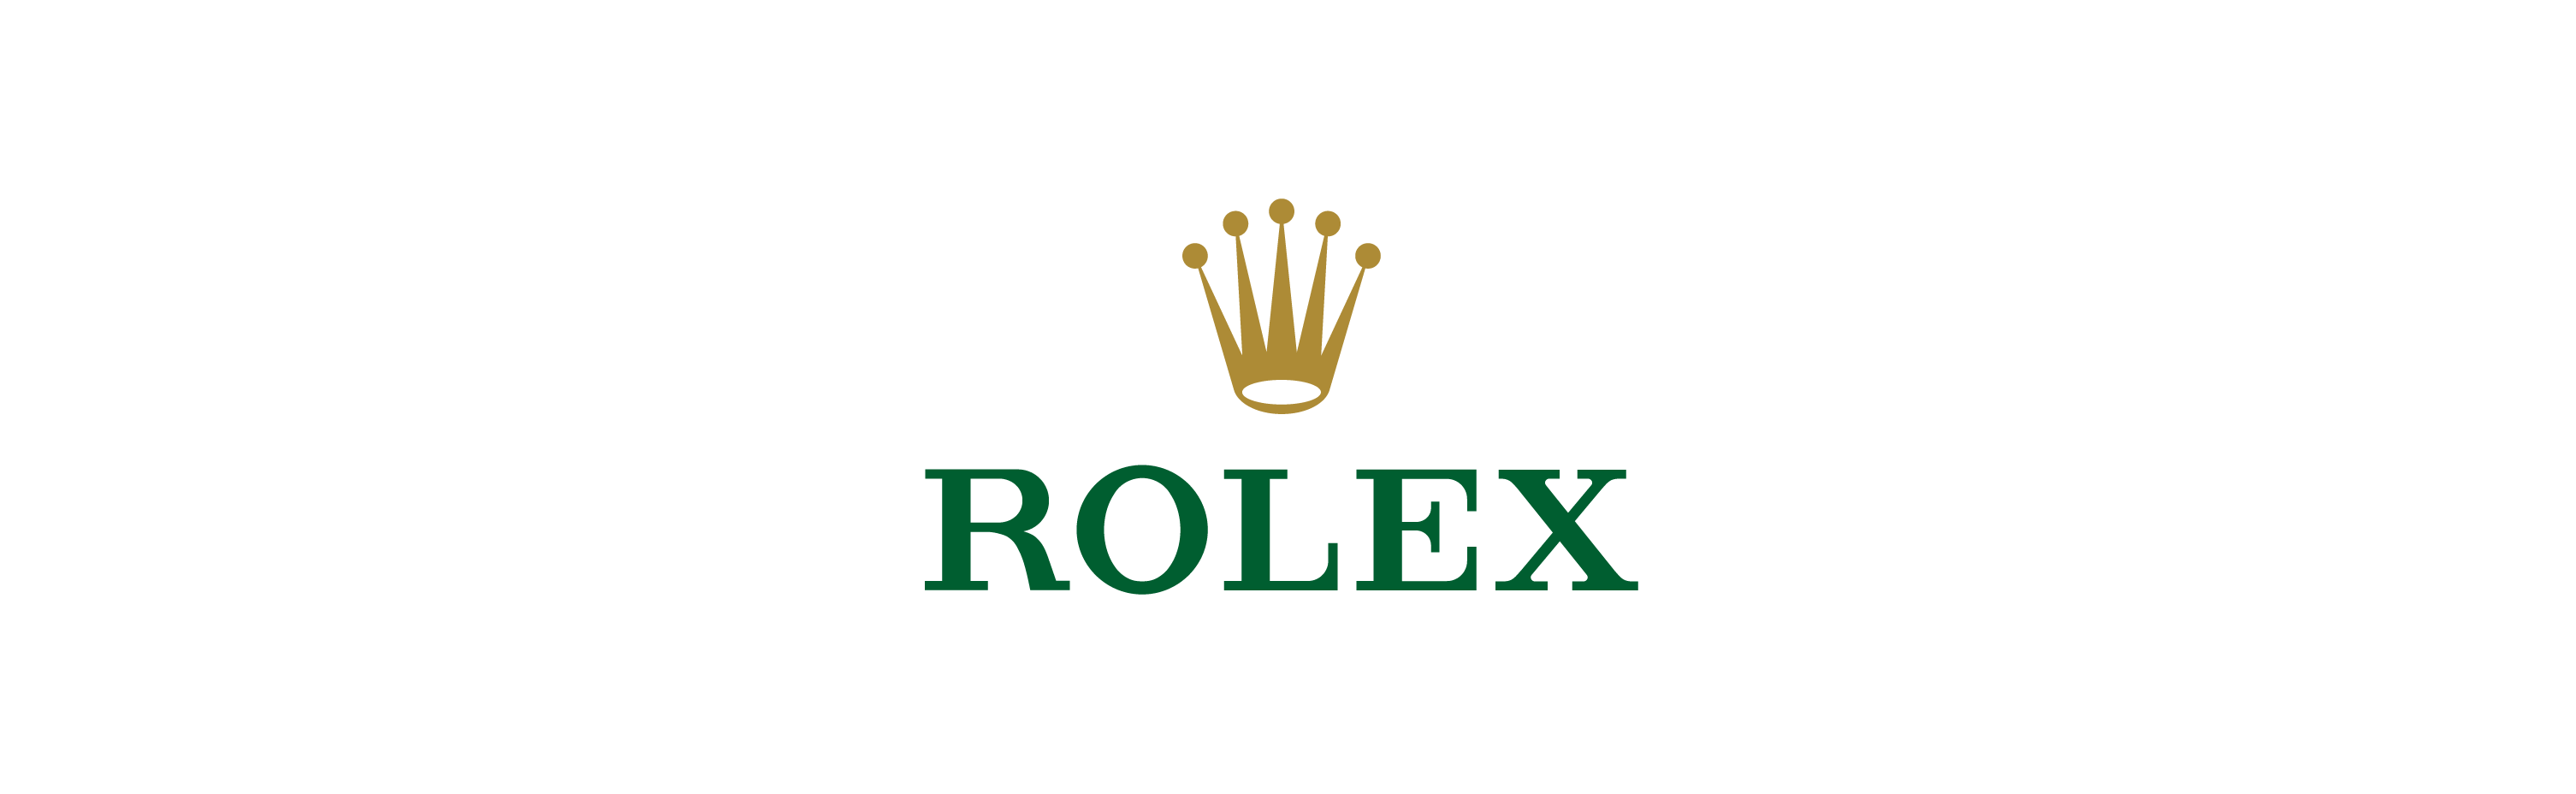 rolex logo wallpaper hd,grün,text,schriftart,grafik,grafikdesign